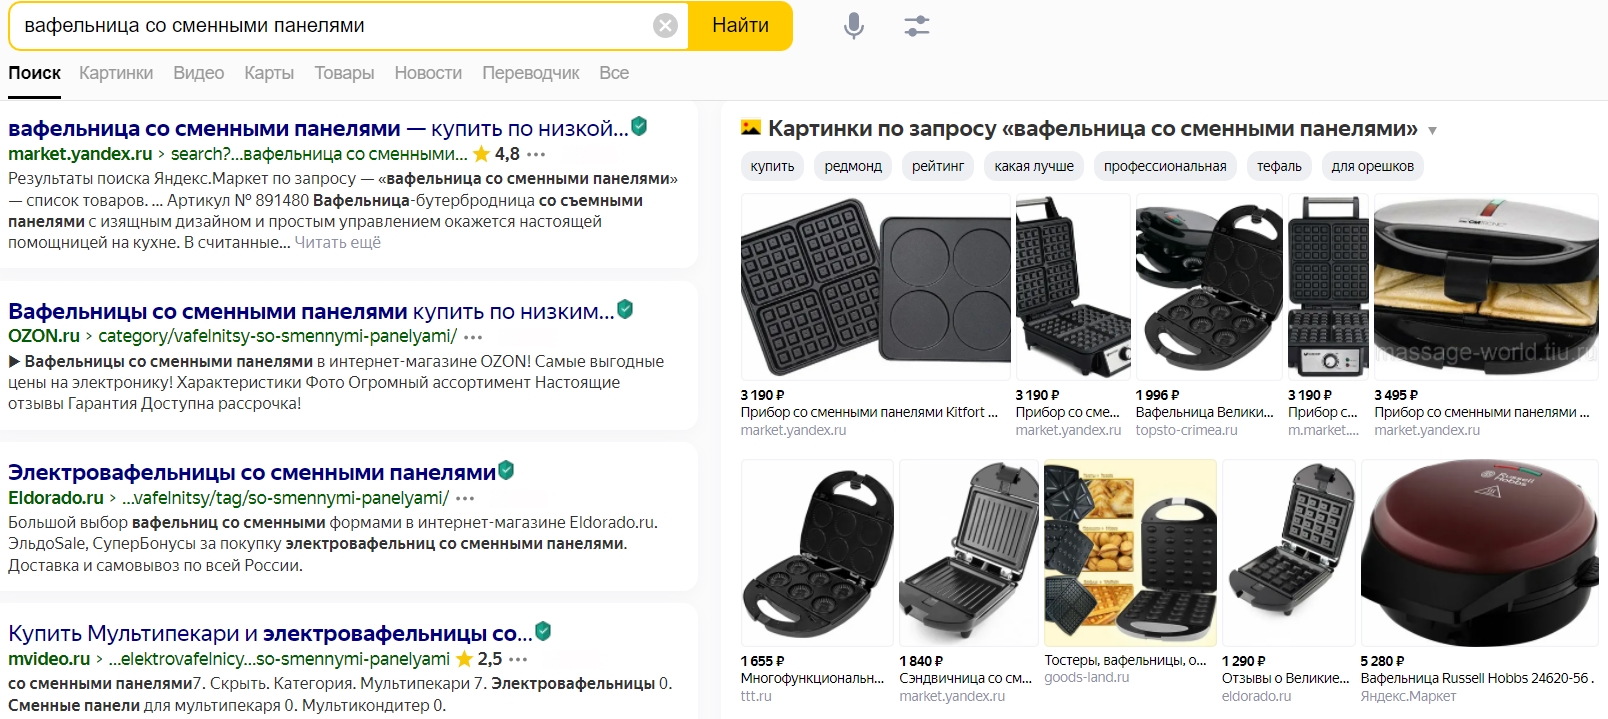 Товары в результатах Яндекса